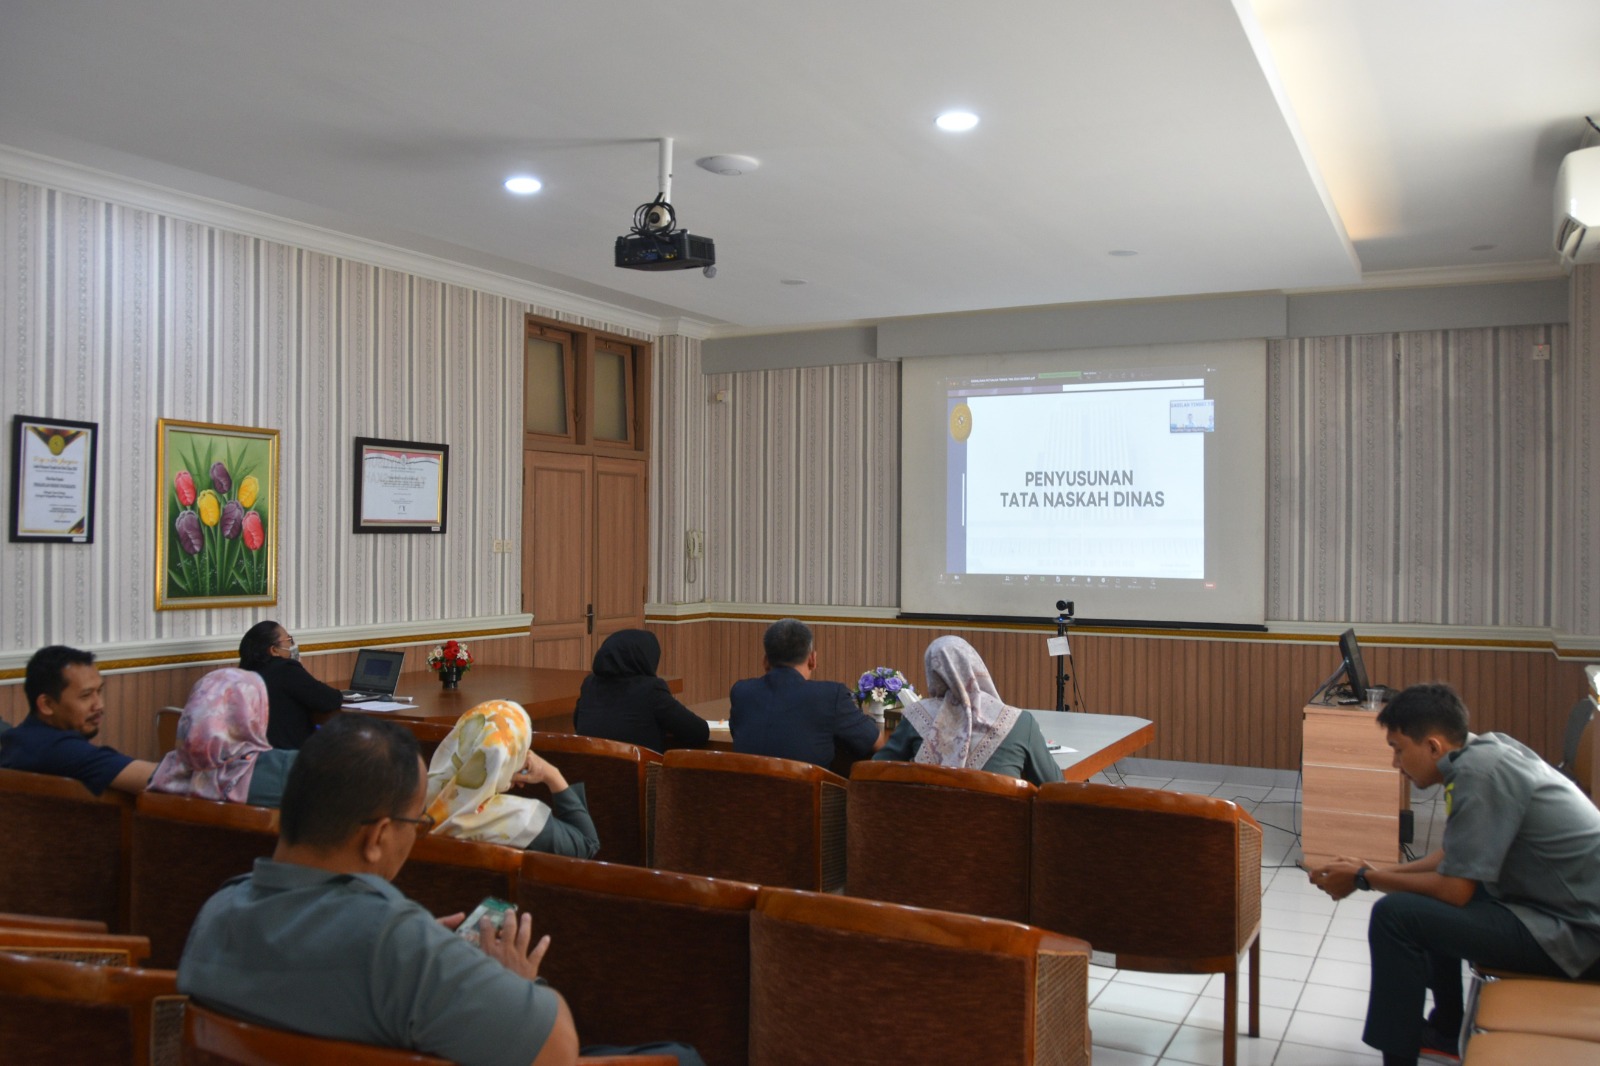 Pengadilan Negeri Yogyakarta Mengikuti Sosialisasi Pedoman Tata Naskah Dinas di Lingkungan Mahkamah Agung dan Badan Peradilan Dibawahnya